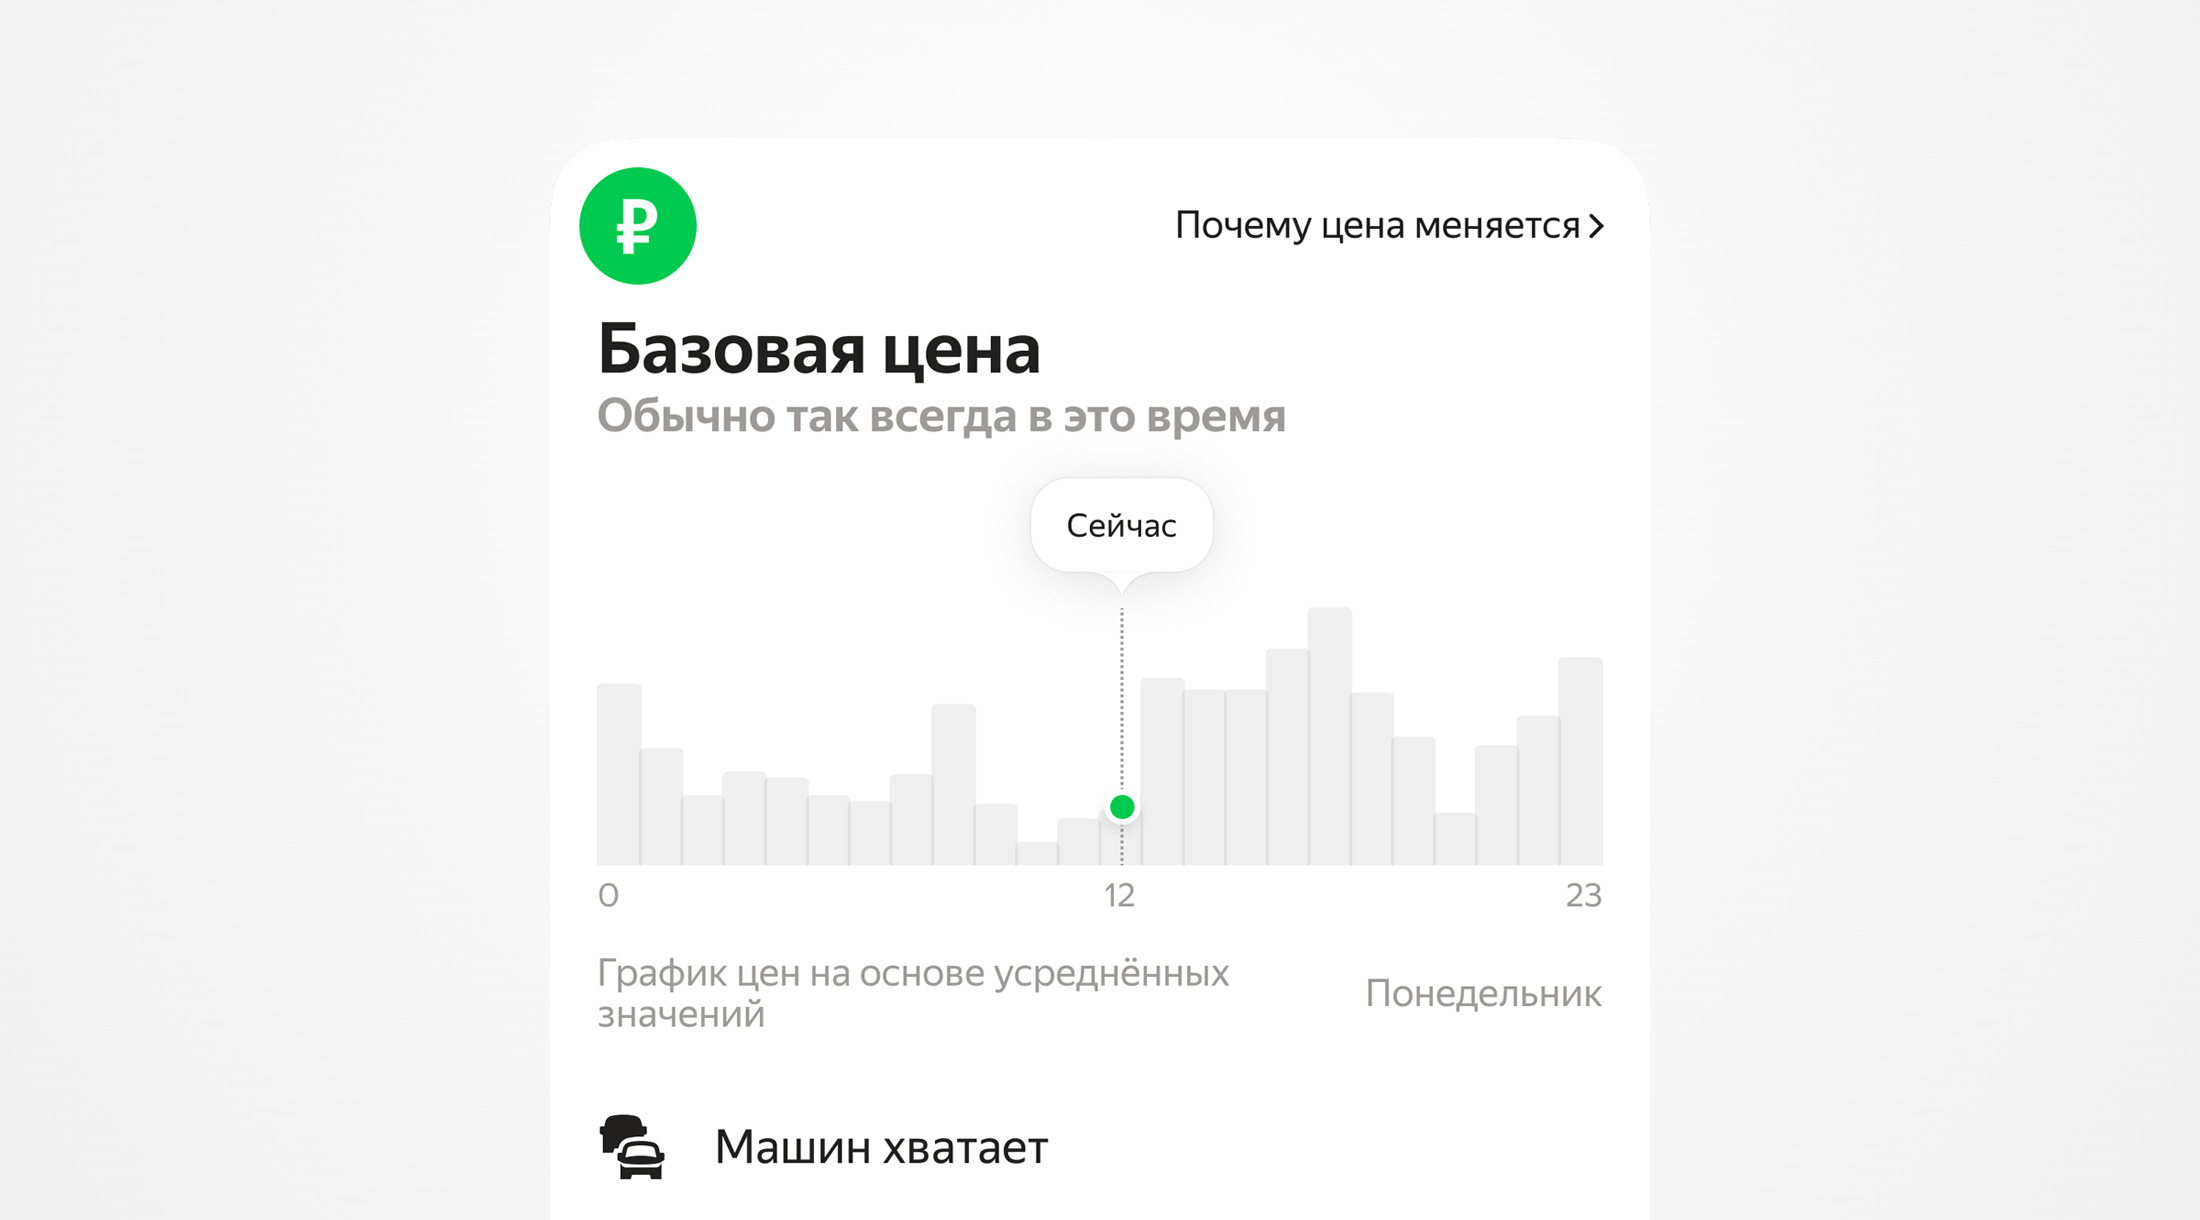 Яндекс Go поможет избежать часа пик для поездки на такси